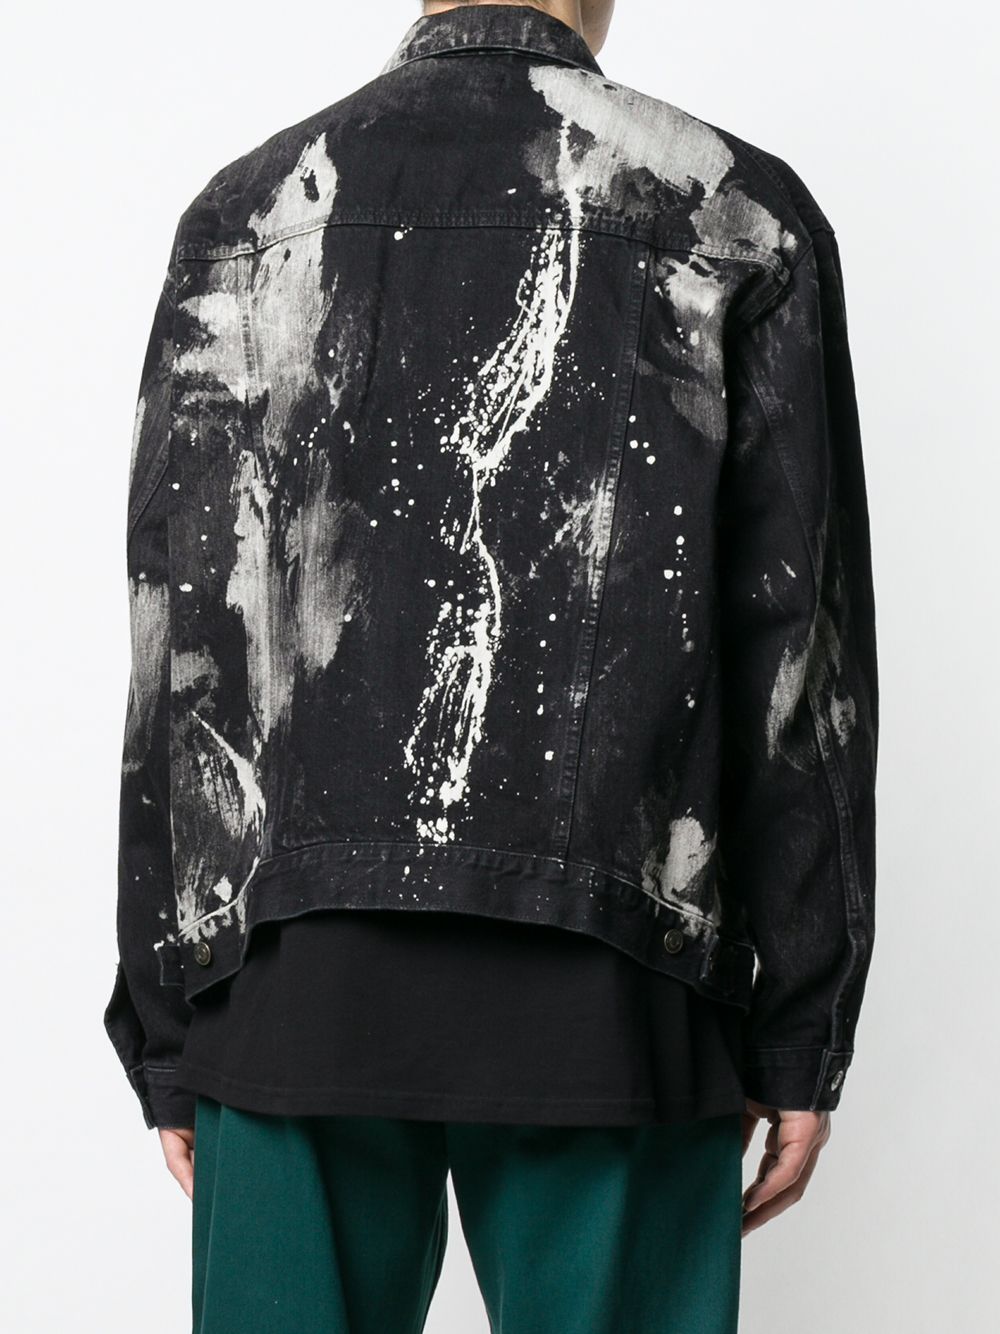 фото Balenciaga джинсовая куртка с эффектом краски